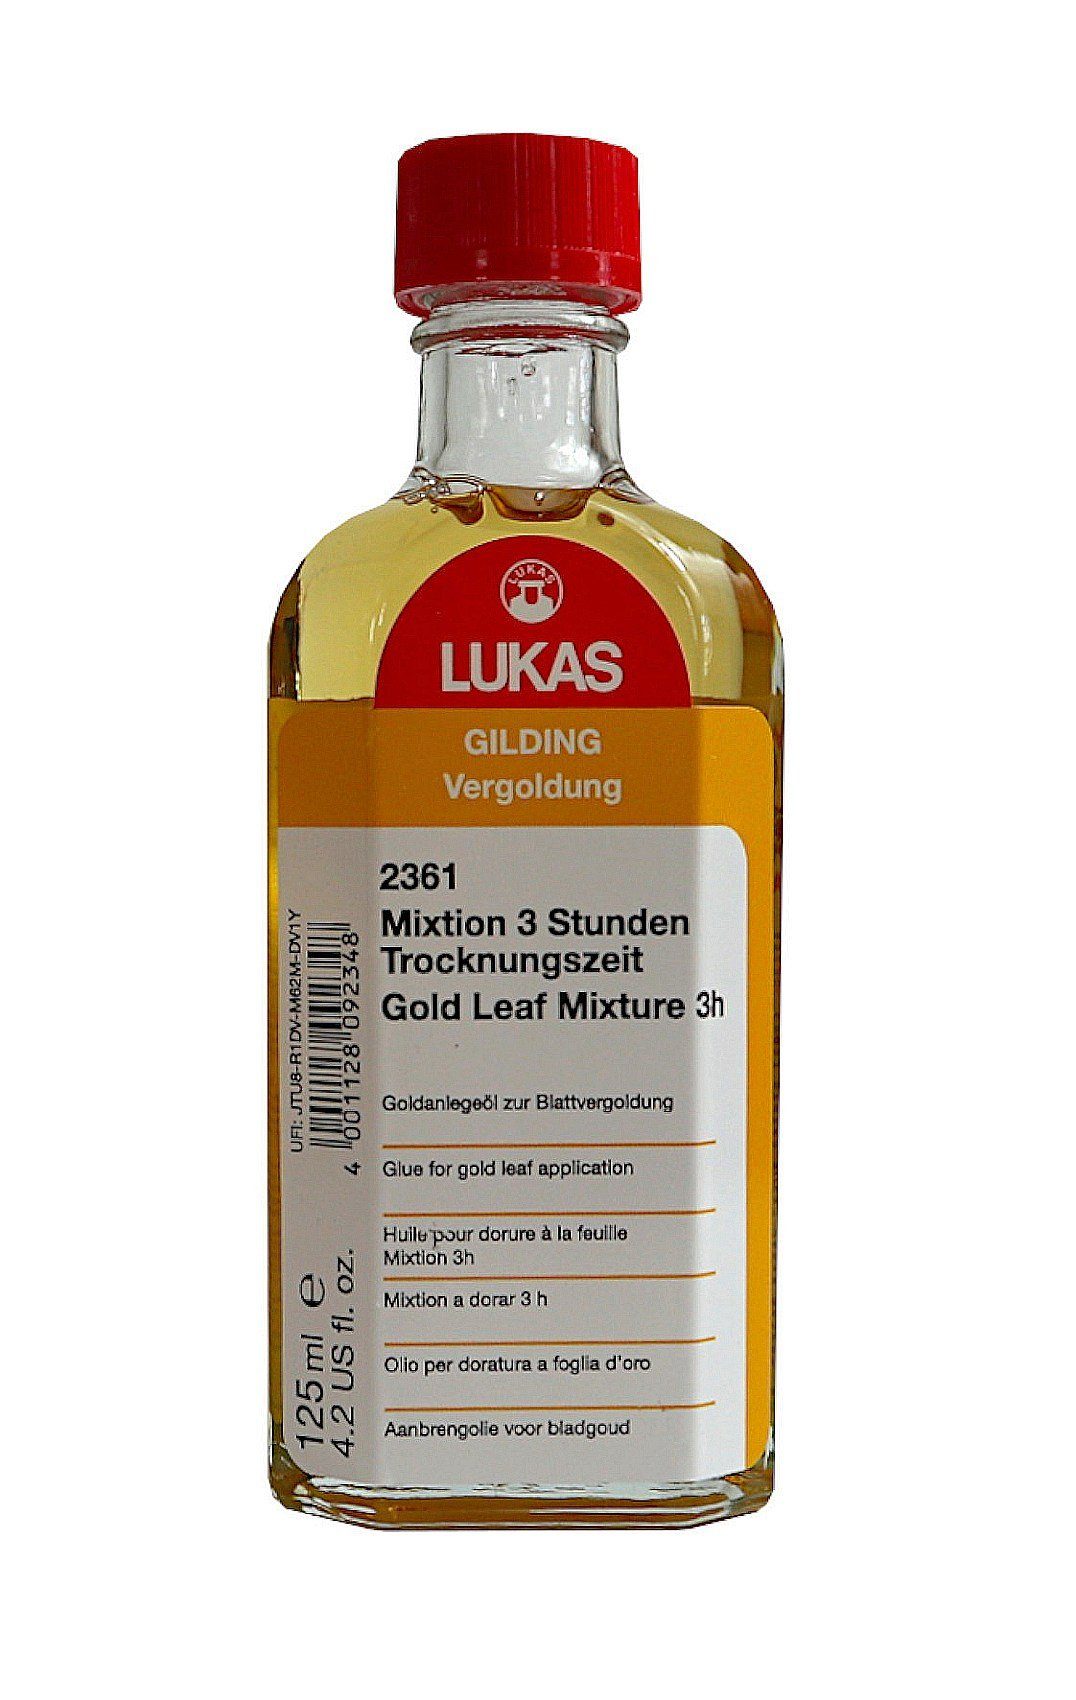 Lukas-Nerchau GmbH LUKAS Stunden ml - Mixtion 3 Trocknungszeit 125 Leinölfirnis